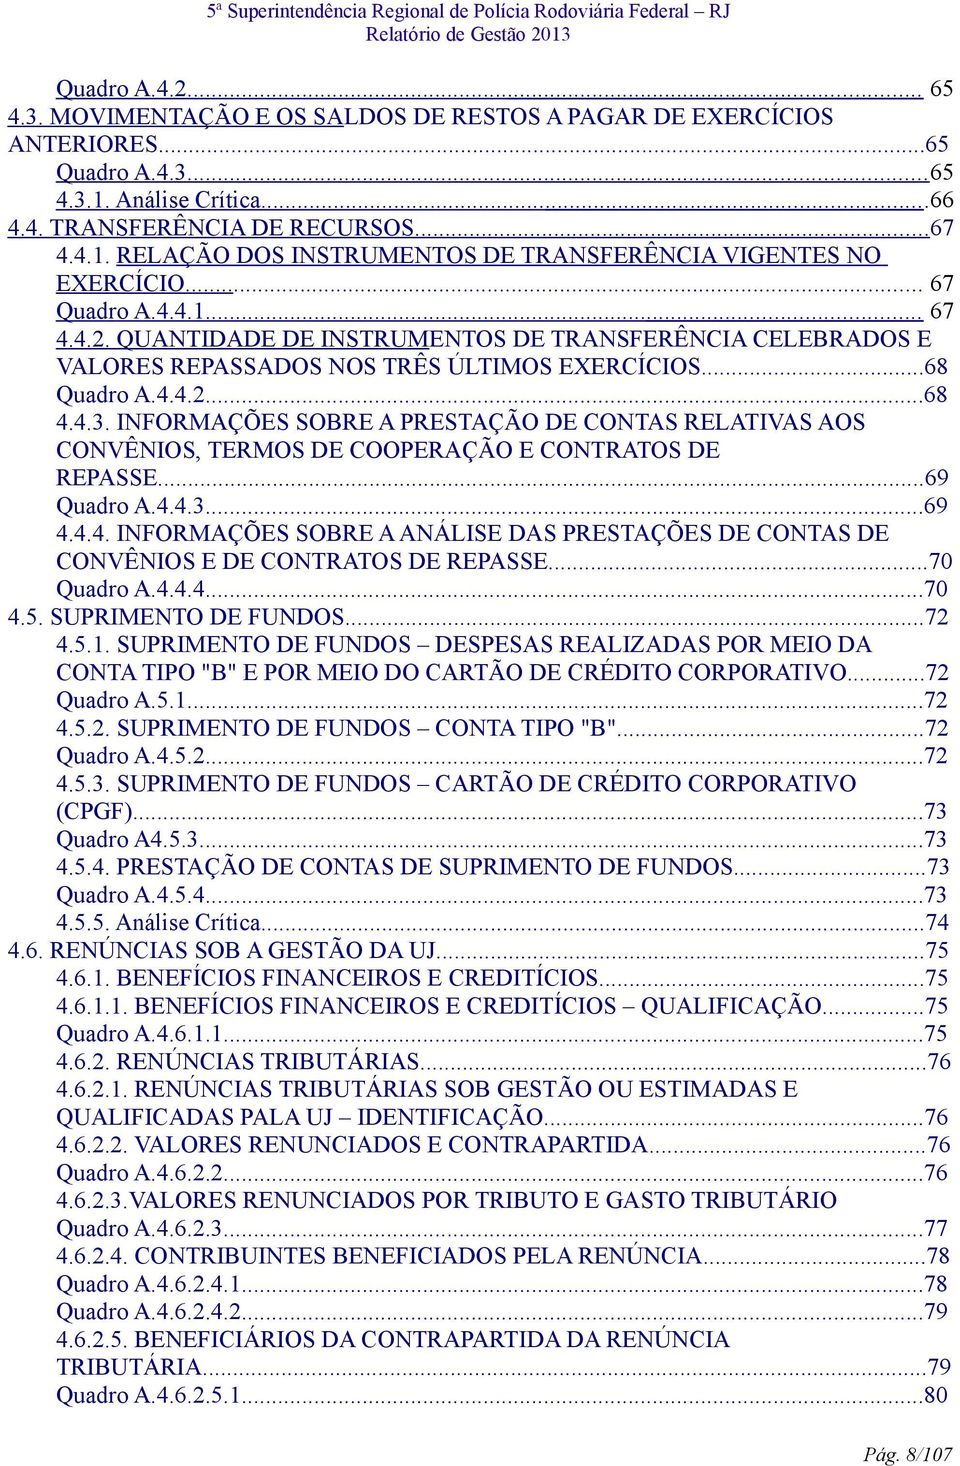 INFORMAÇÕES SOBRE A PRESTAÇÃO DE CONTAS RELATIVAS AOS CONVÊNIOS, TERMOS DE COOPERAÇÃO E CONTRATOS DE REPASSE...69 Quadro A.4.